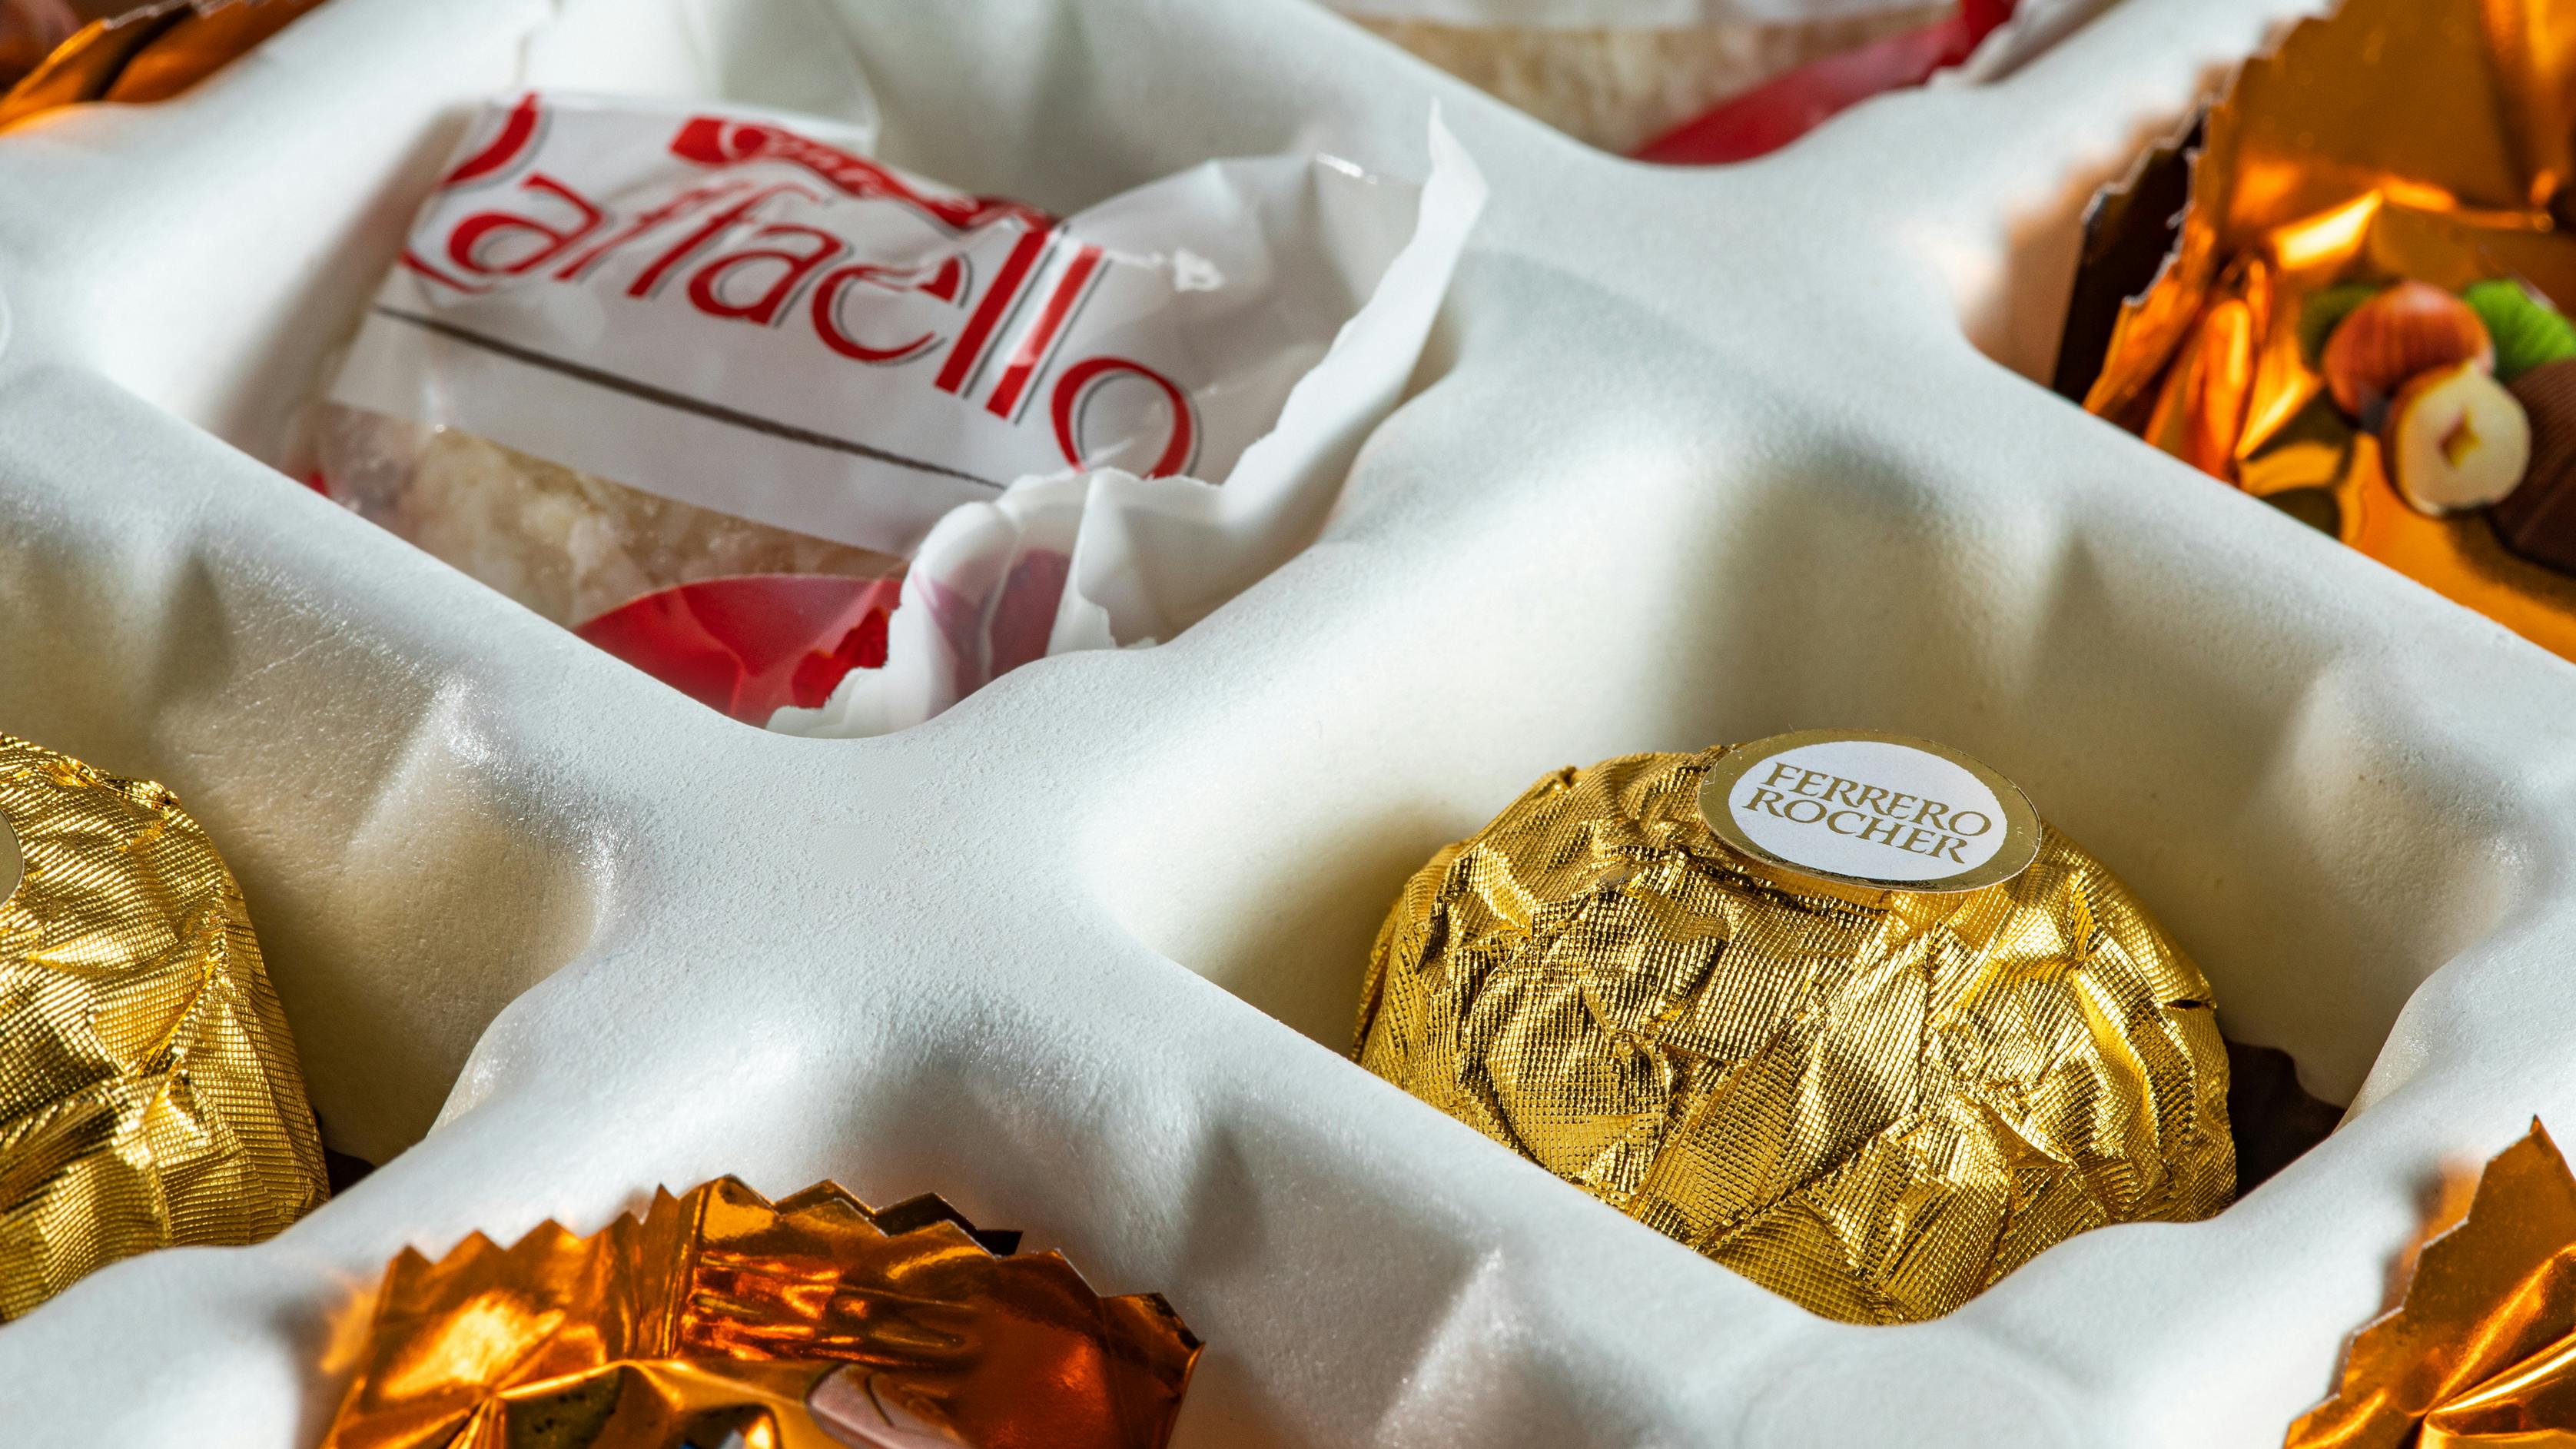 Foto af inderbakke i en julekalender med Ferrero-chokolader